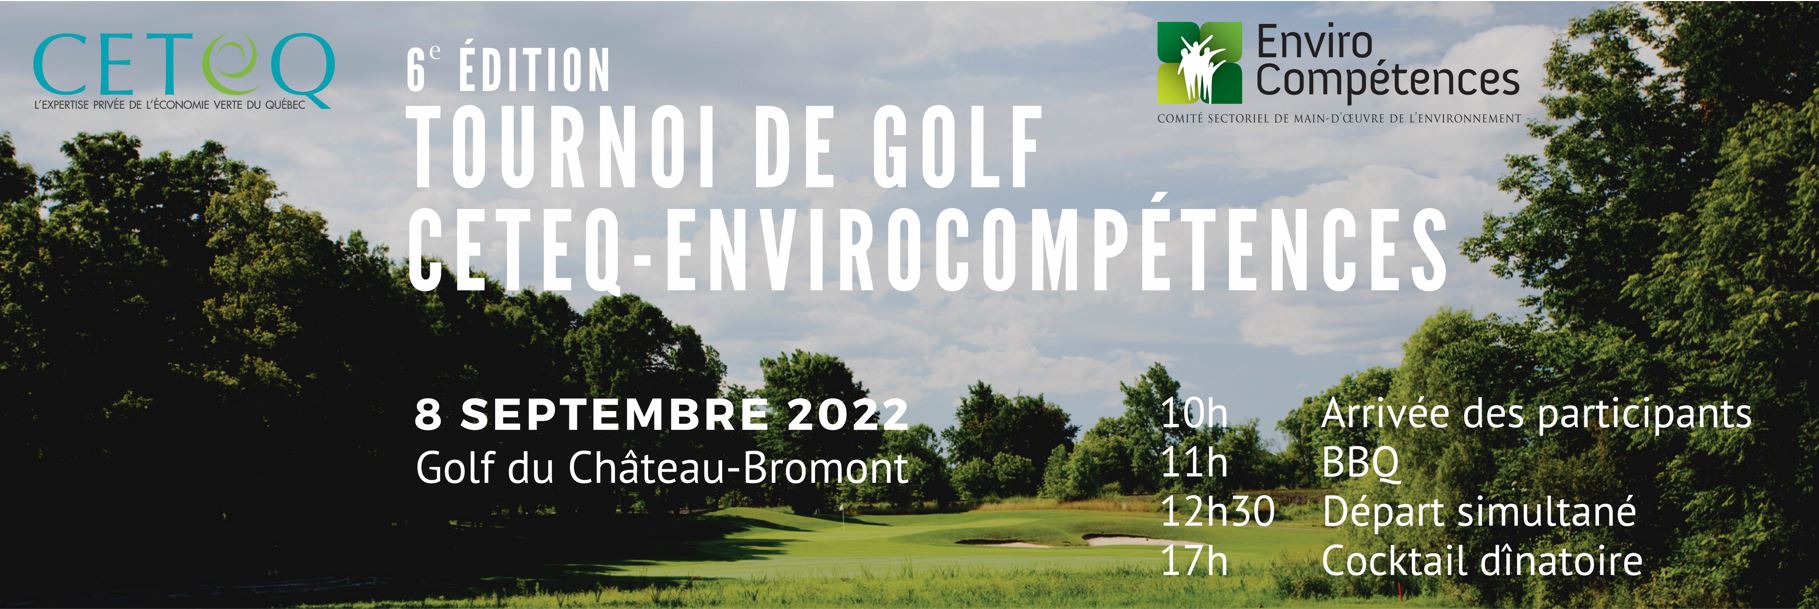 6e édition tournoi de golf CETEQ-ENVIROCOMPÉTENCES